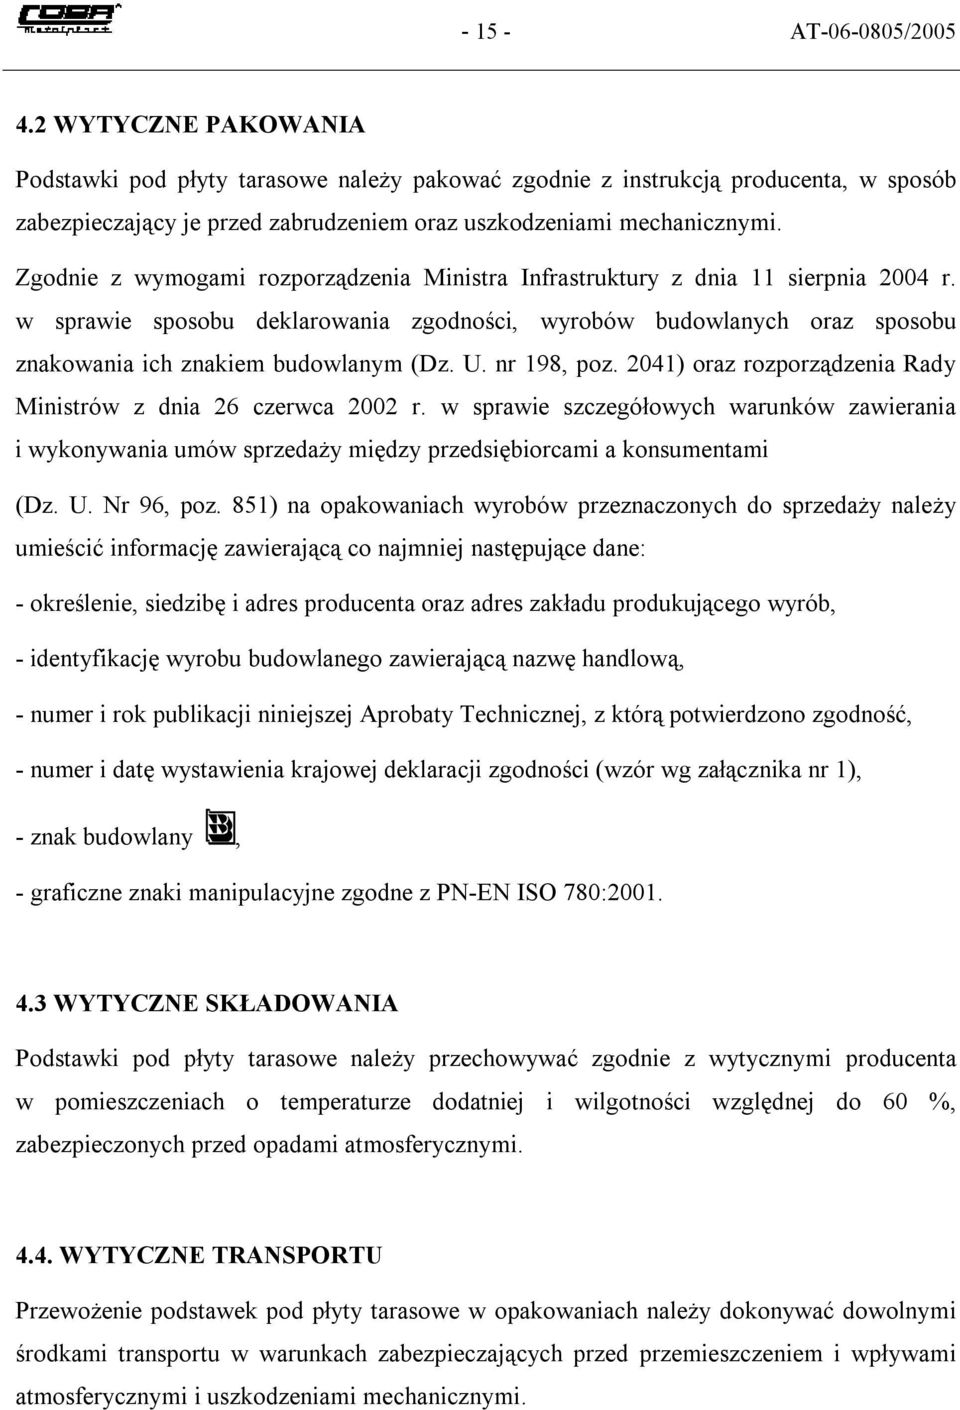 Zgodnie z wymogami rozporządzenia Ministra Infrastruktury z dnia 11 sierpnia 2004 r. w sprawie sposobu deklarowania zgodności, wyrobów budowlanych oraz sposobu znakowania ich znakiem budowlanym (Dz.